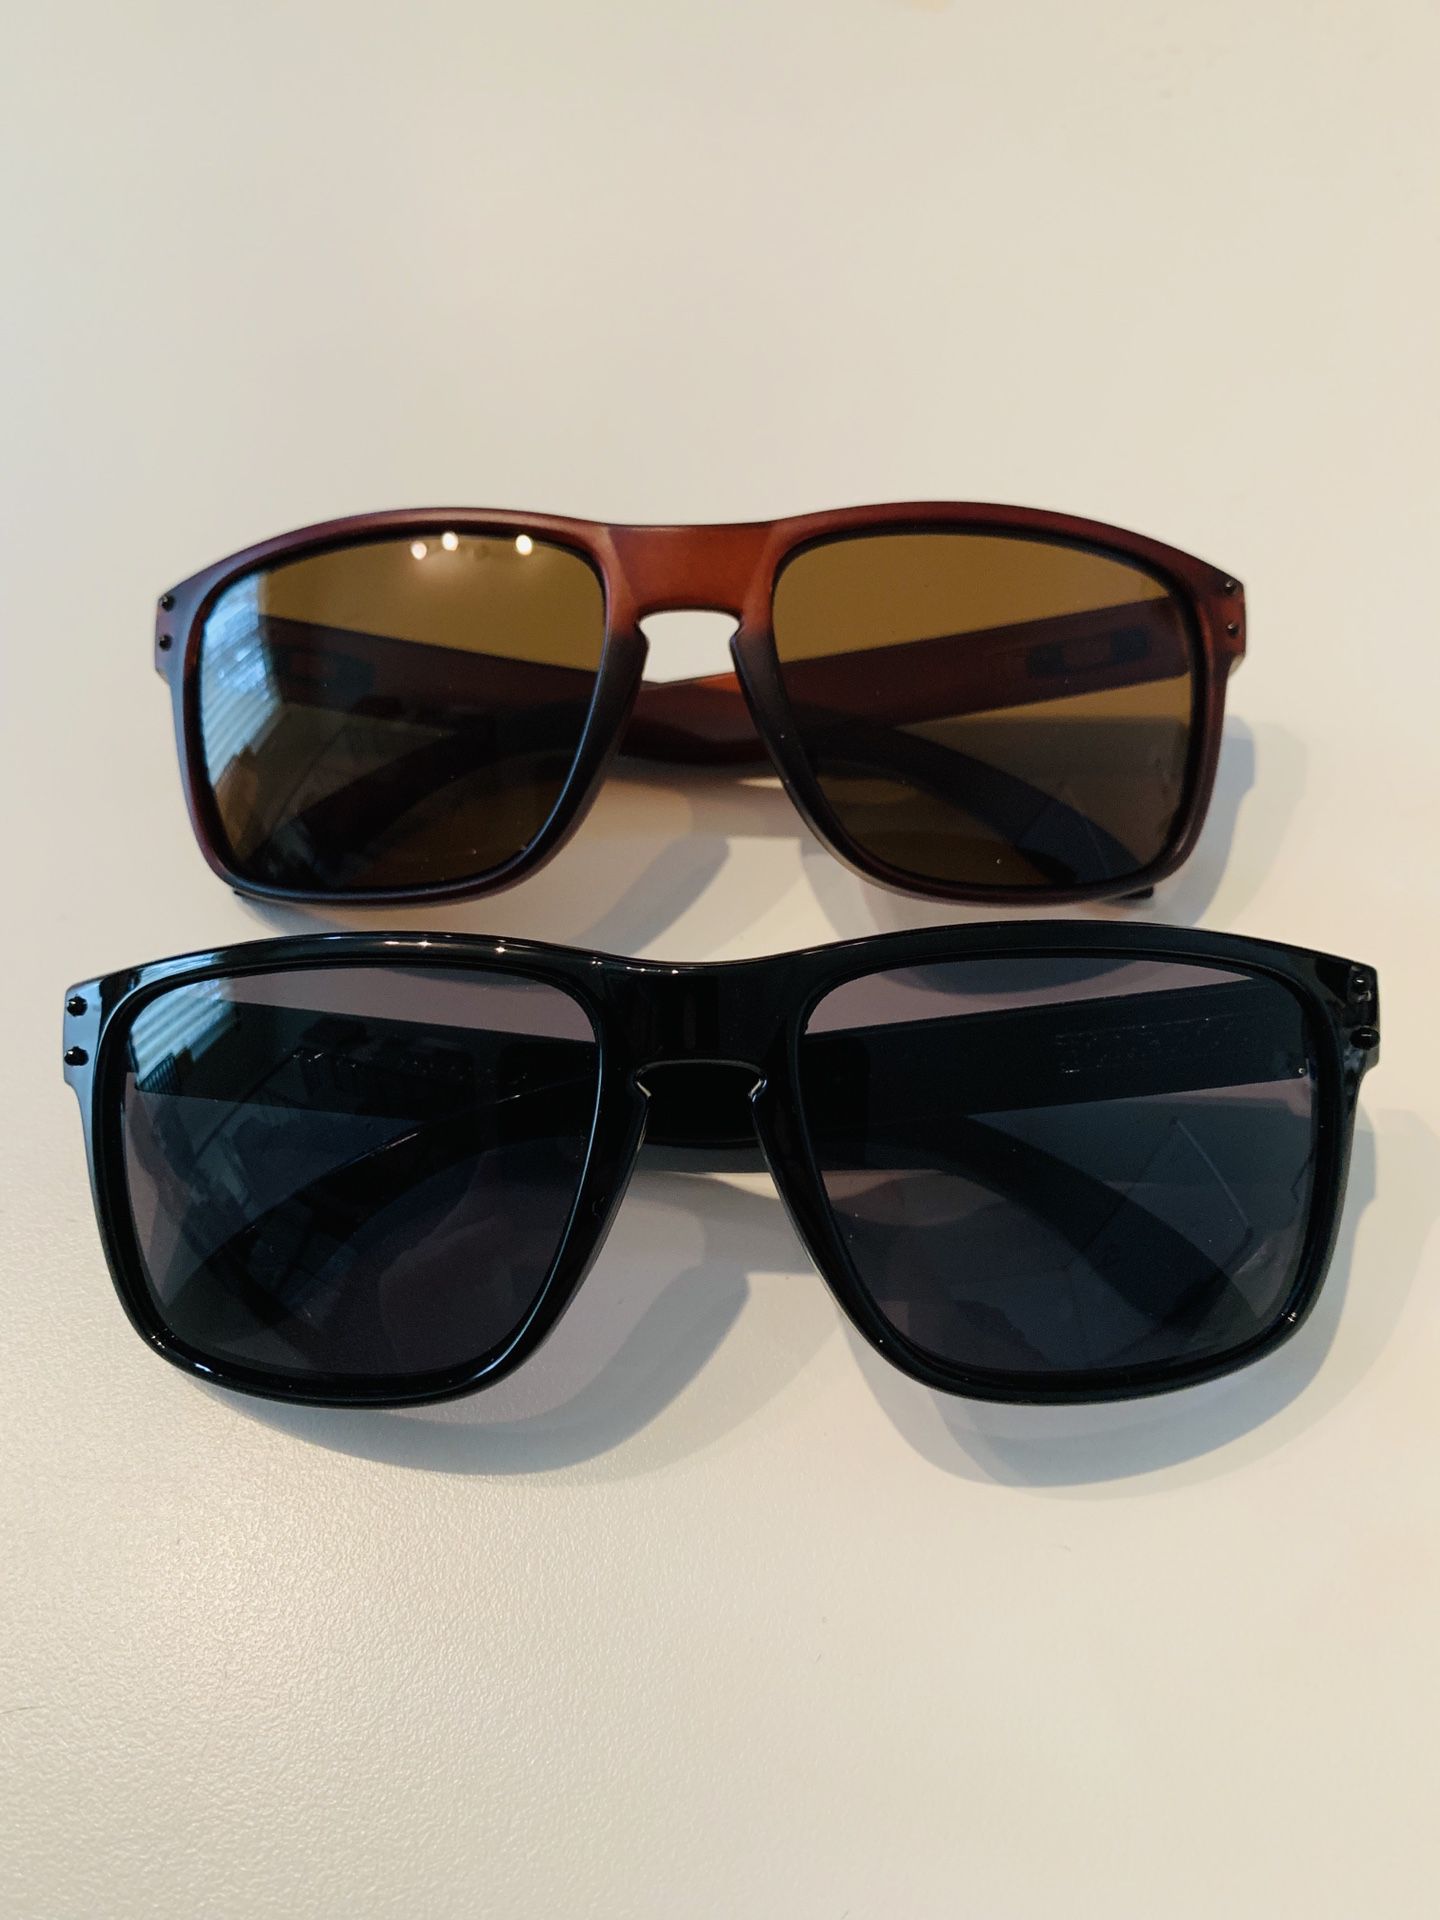 Men’s Motocross Sports Baseball Fishing Generic Sunglasses Black & Brown Frame Dark Lens Frame 2 PAIRS * NEW*